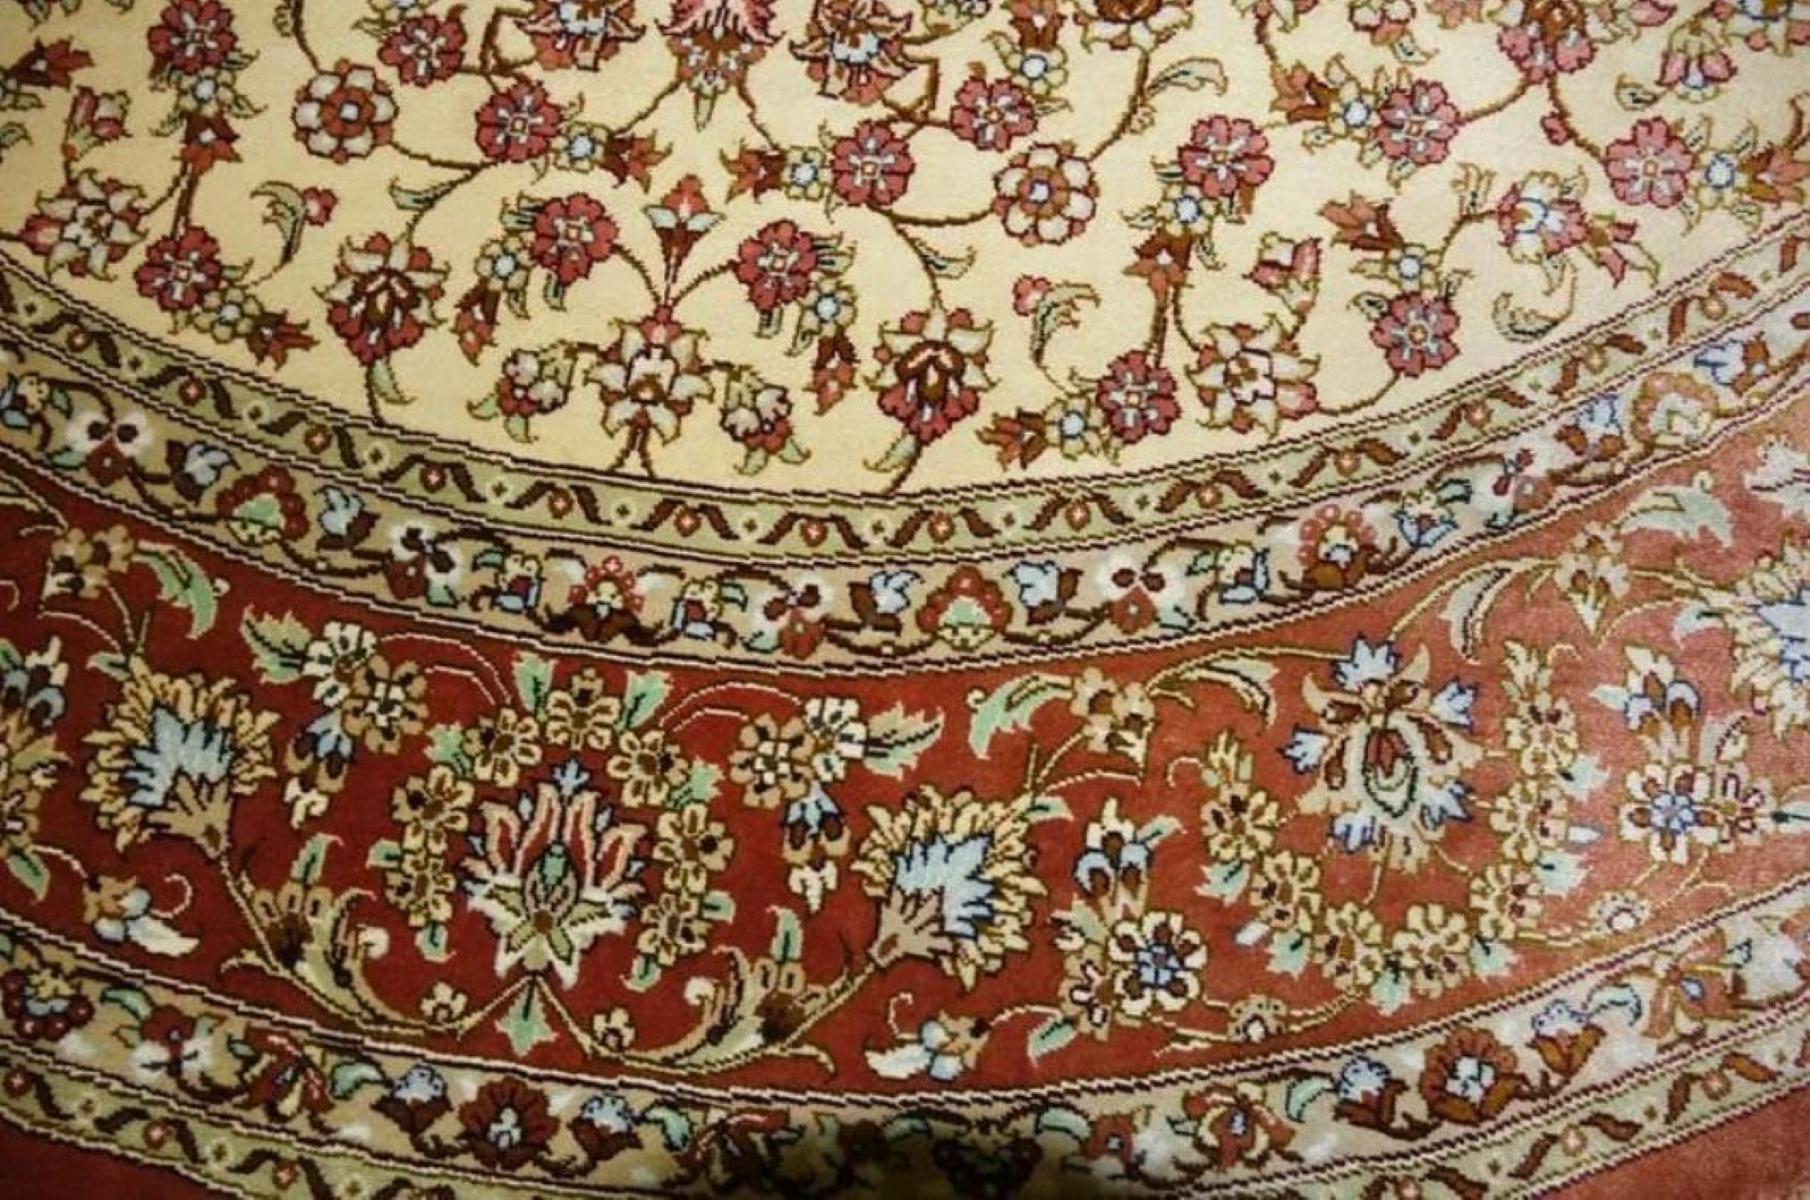 Très beau tapis persan Qum 700 nœuds par pouce, taille 5 x 5  Fond de teint soie et soie. Environ 2 500 000 nœuds noués à la main, un par un. Il faut 2 ans pour réaliser cette œuvre d'art.